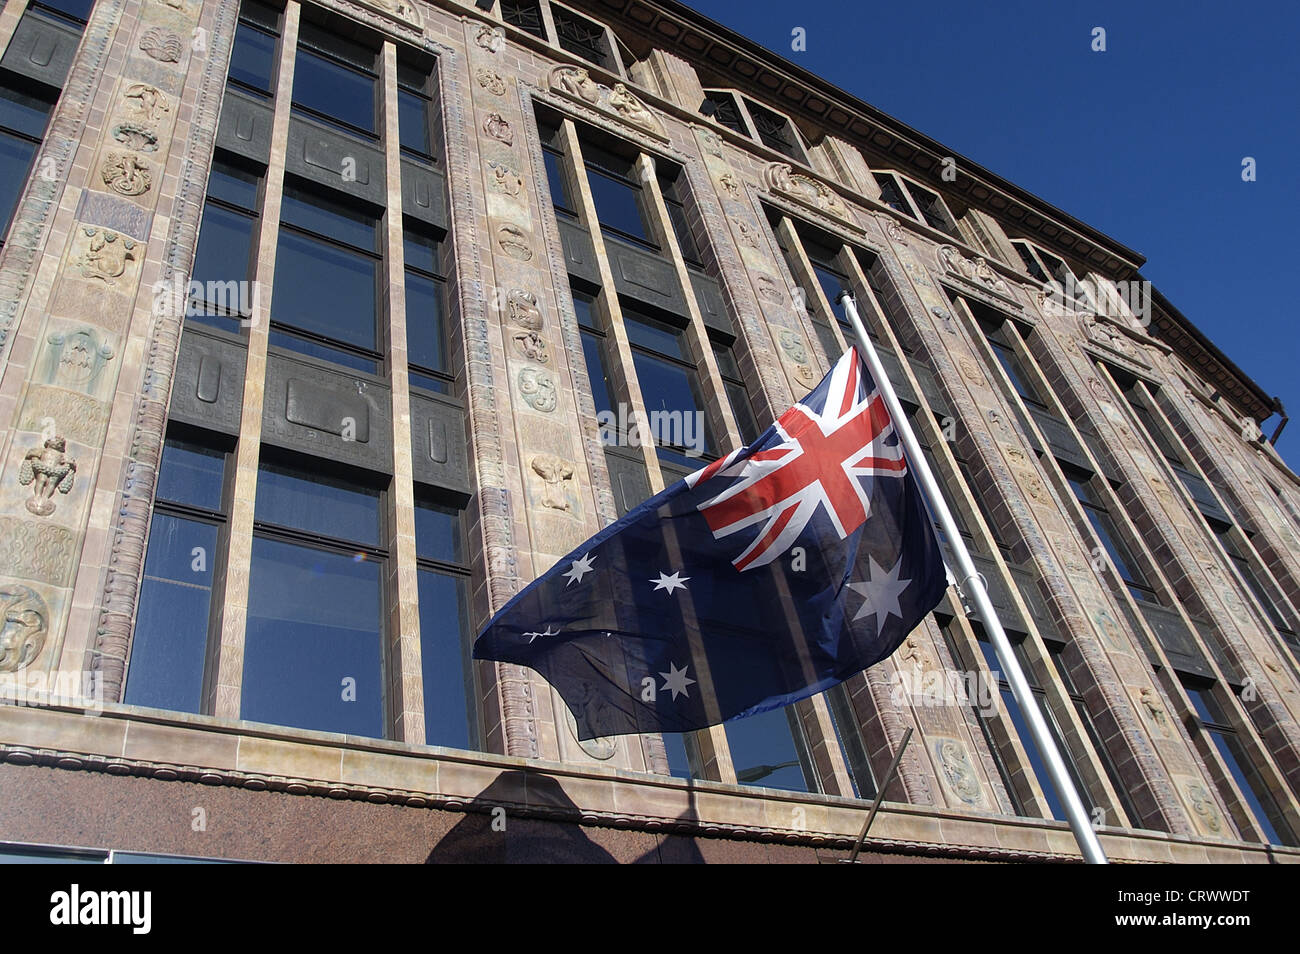 The Australian Embassy in Berlin-Mitte in Berlin Stock Photo - Alamy